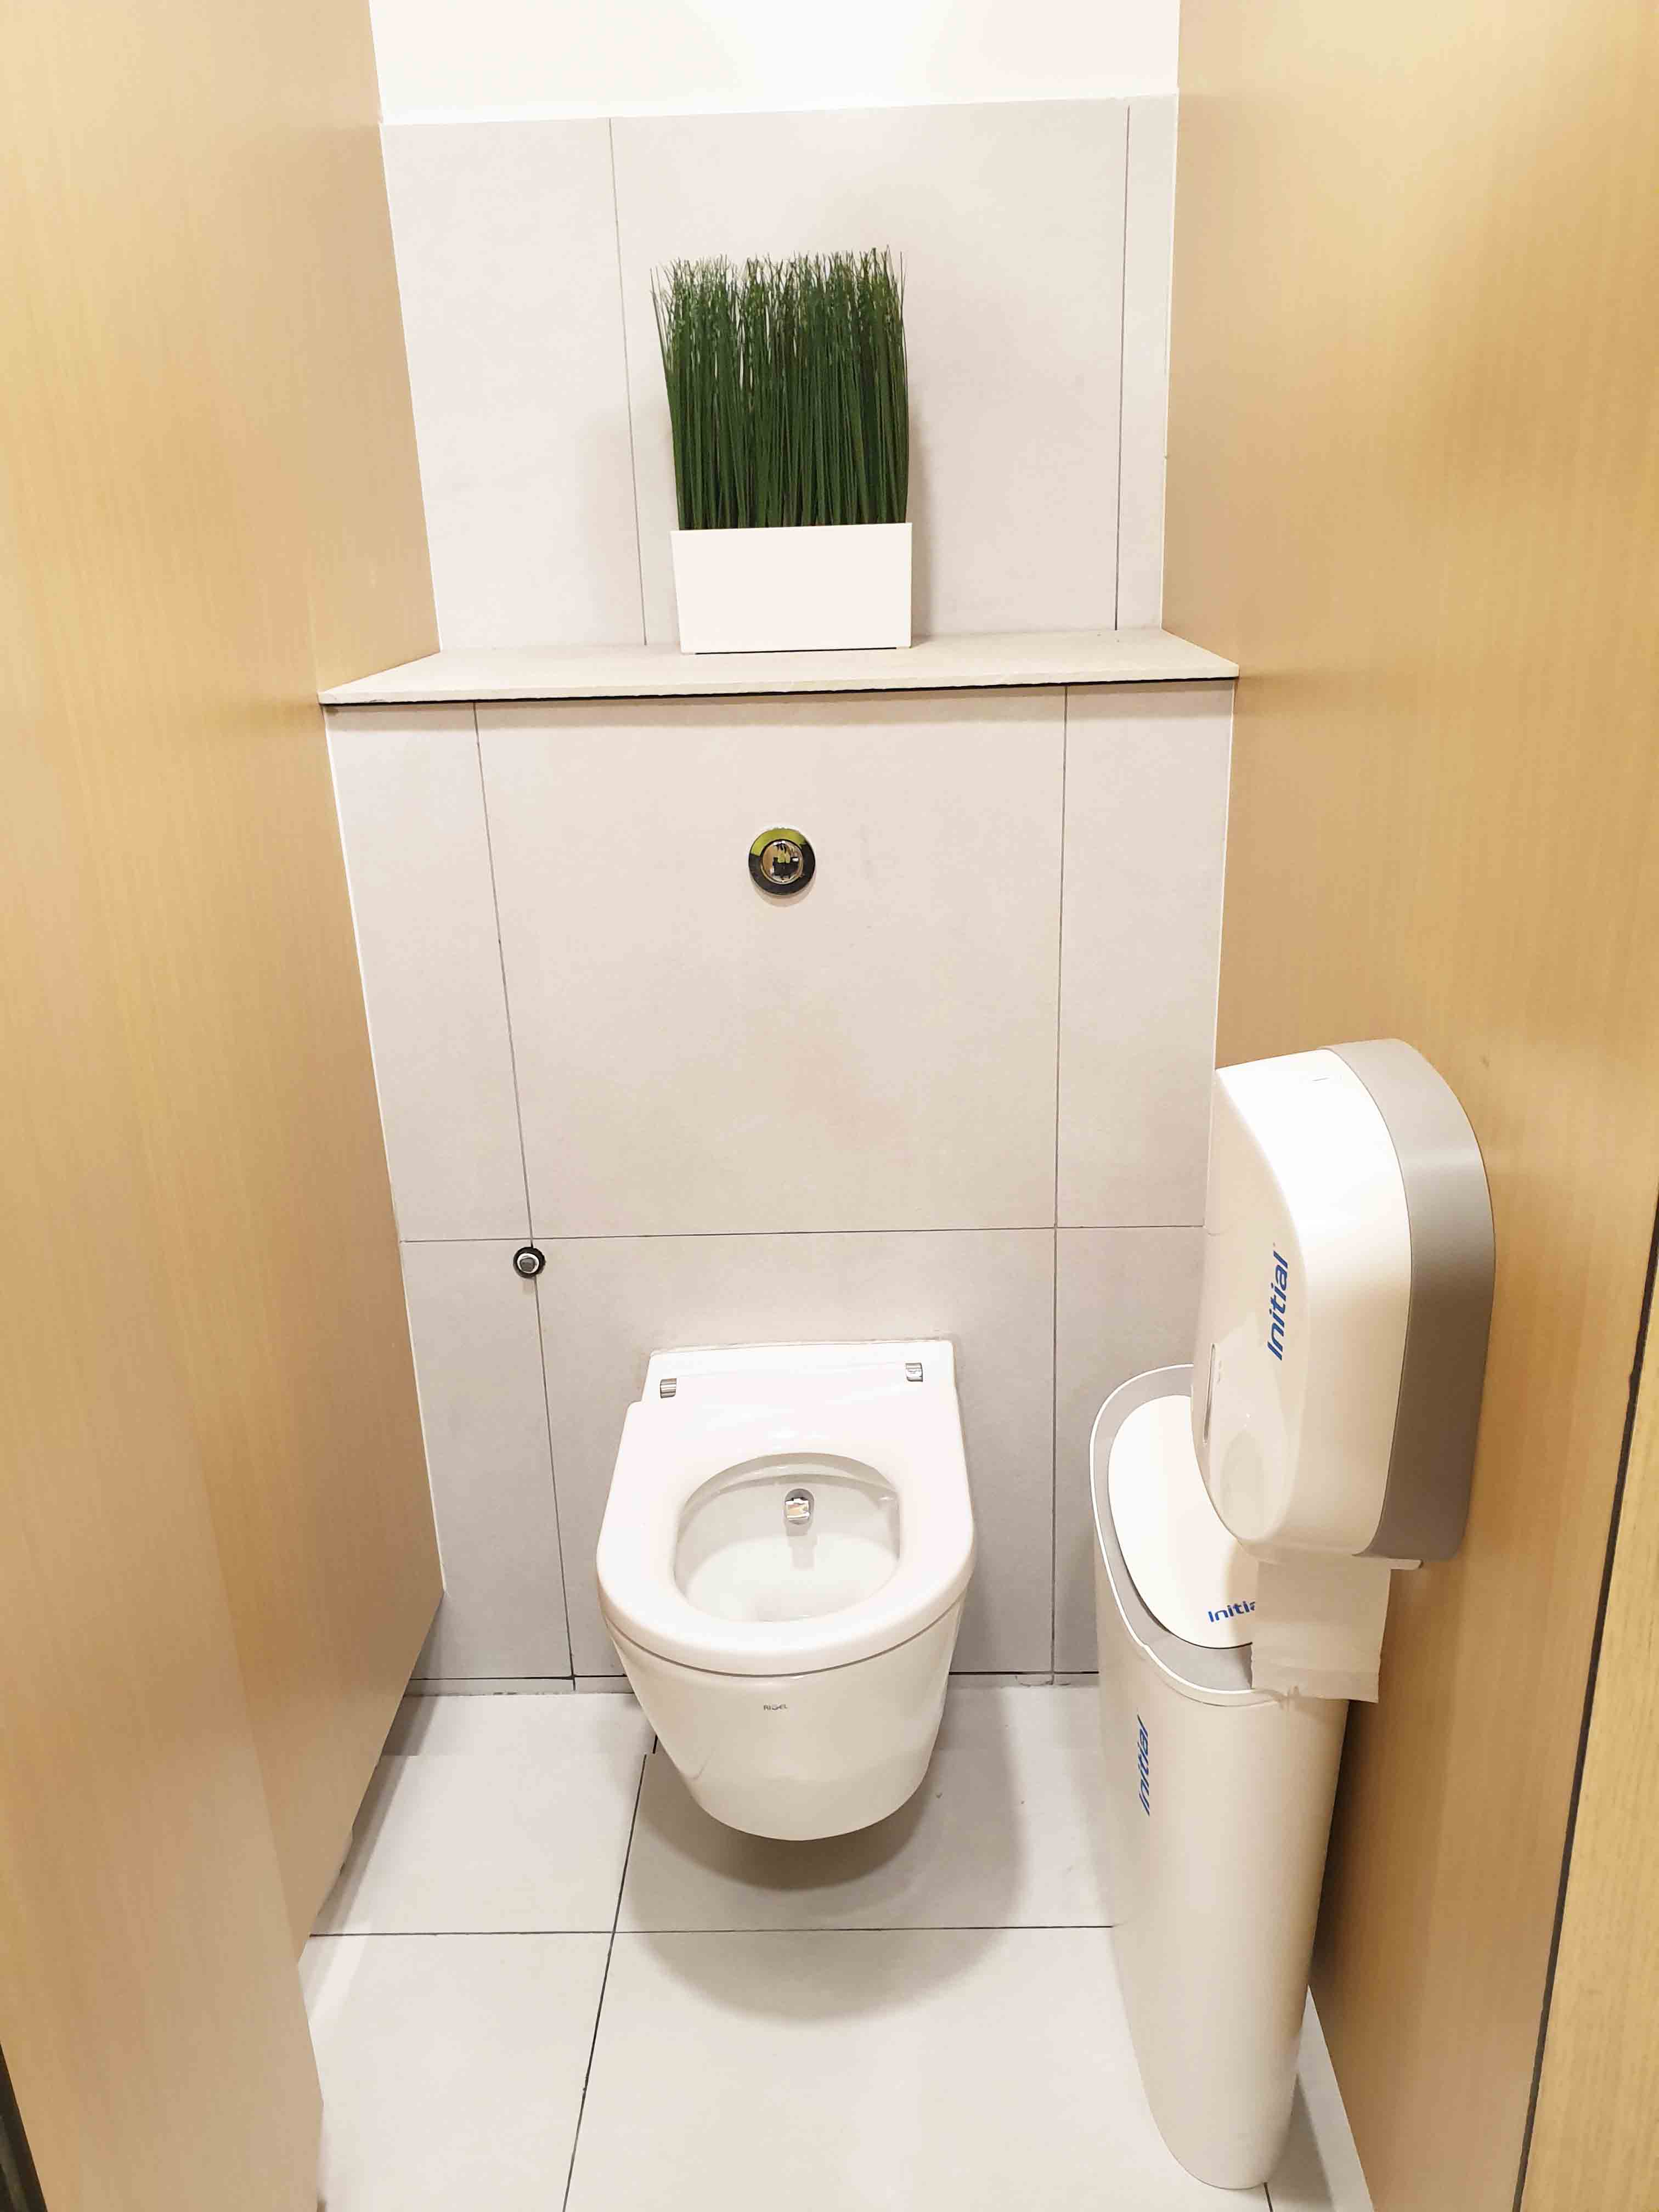 Toilet Cubicle Design